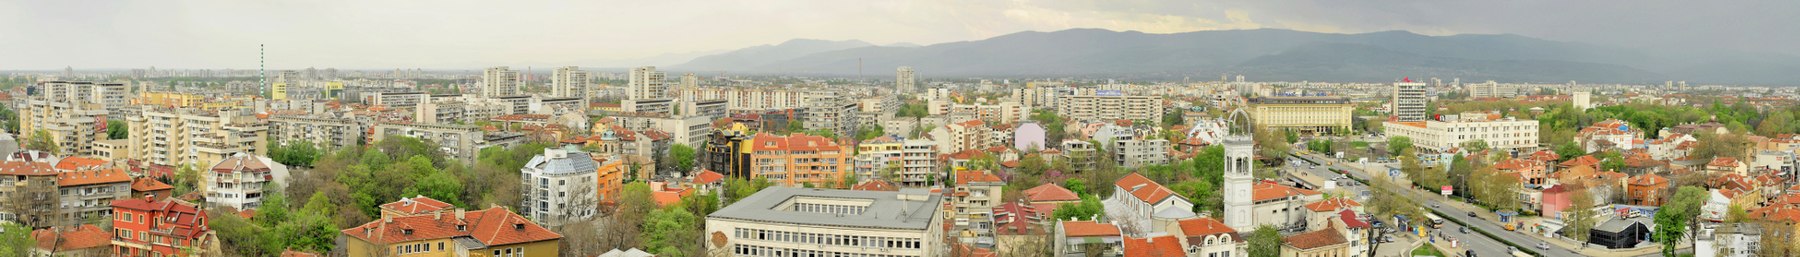 Sepanduk Plovdiv.jpg